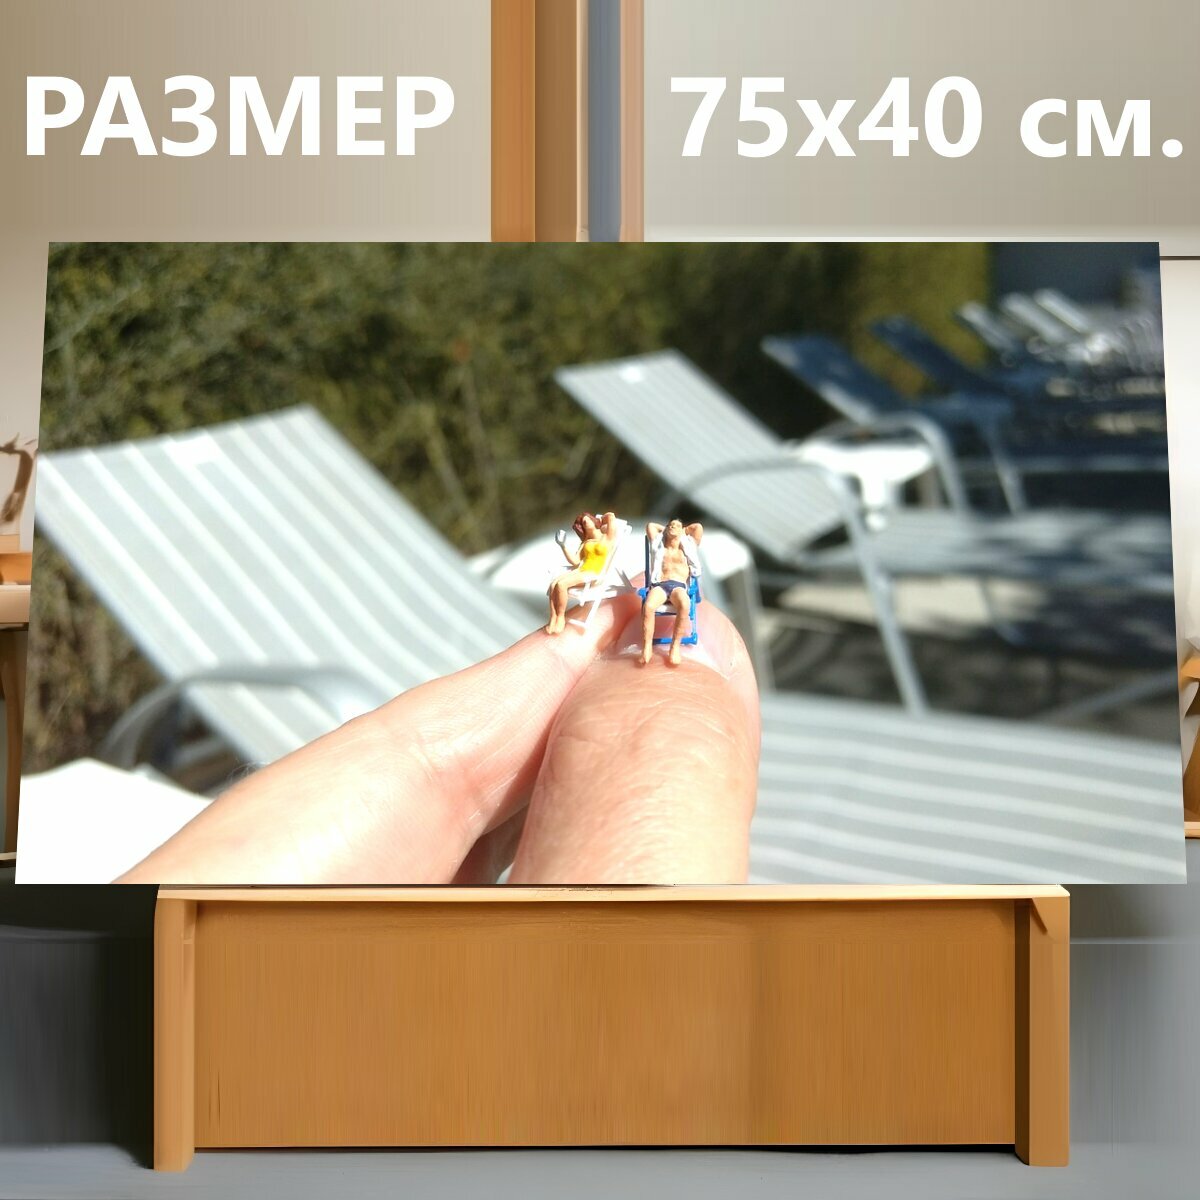 Картина на холсте "Солнце, шезлонг, миниатюрные фигурки" на подрамнике 75х40 см. для интерьера